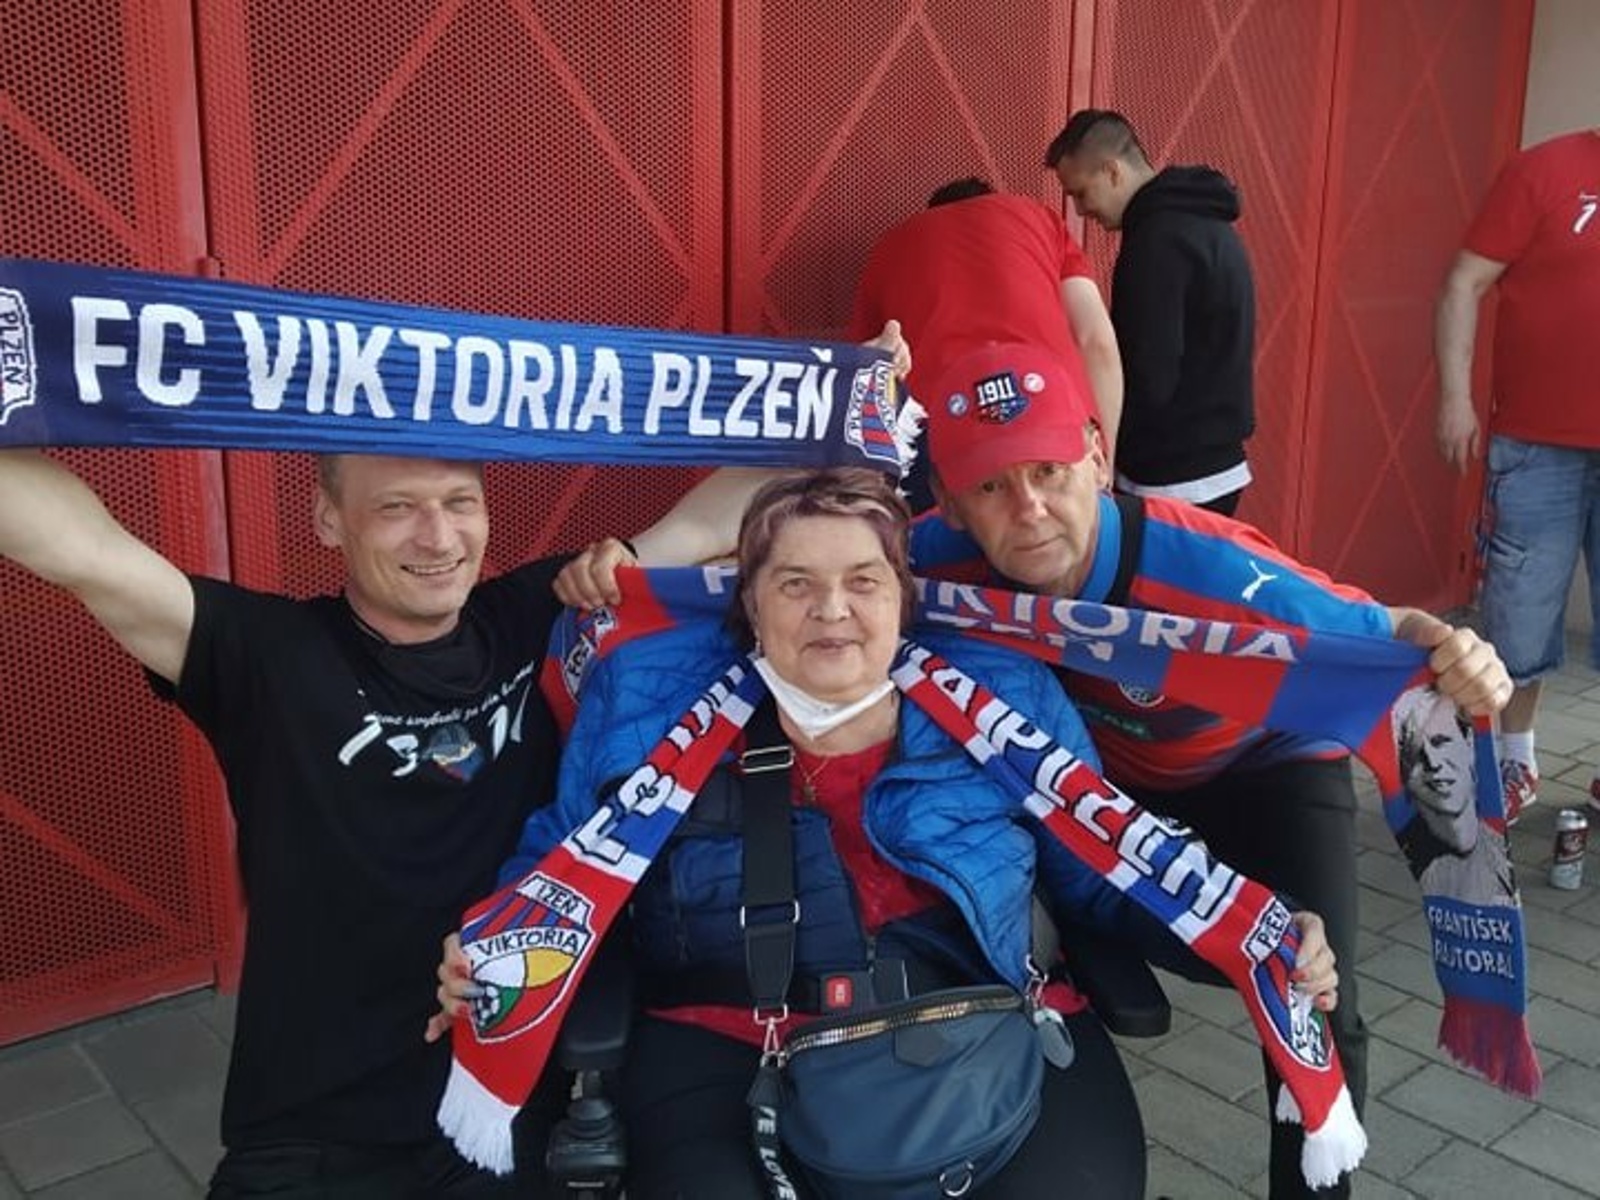 Viktoria je srdeční záležitost, říká plzeňská fanynka, se kterou se osud  nepáral - Plzeňský deník